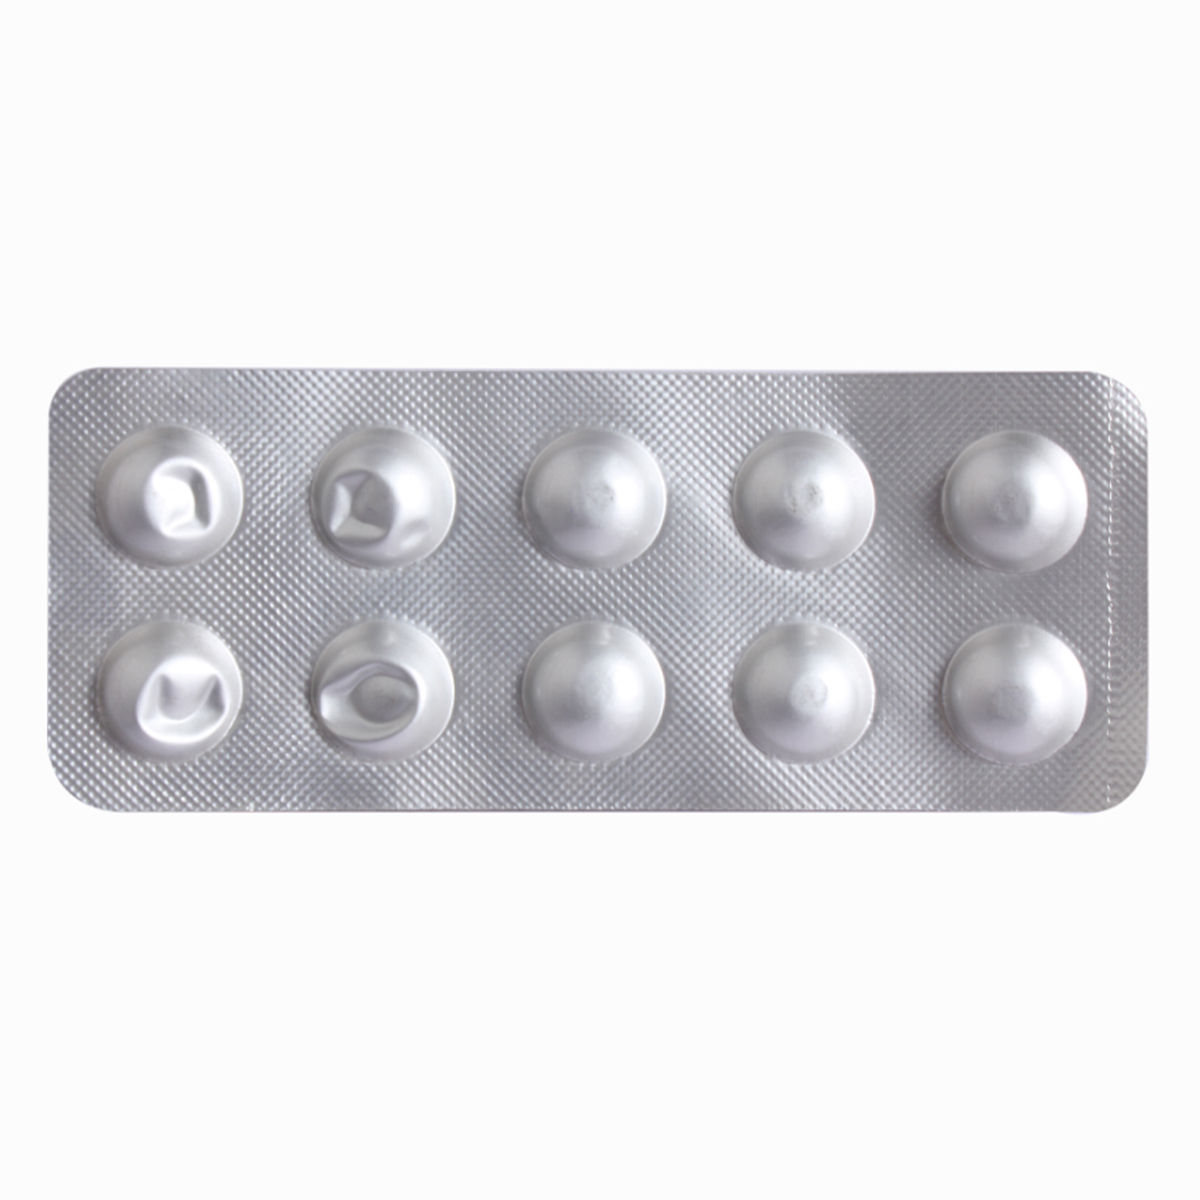 Buy Livz 5 mg Tablet 10's Online